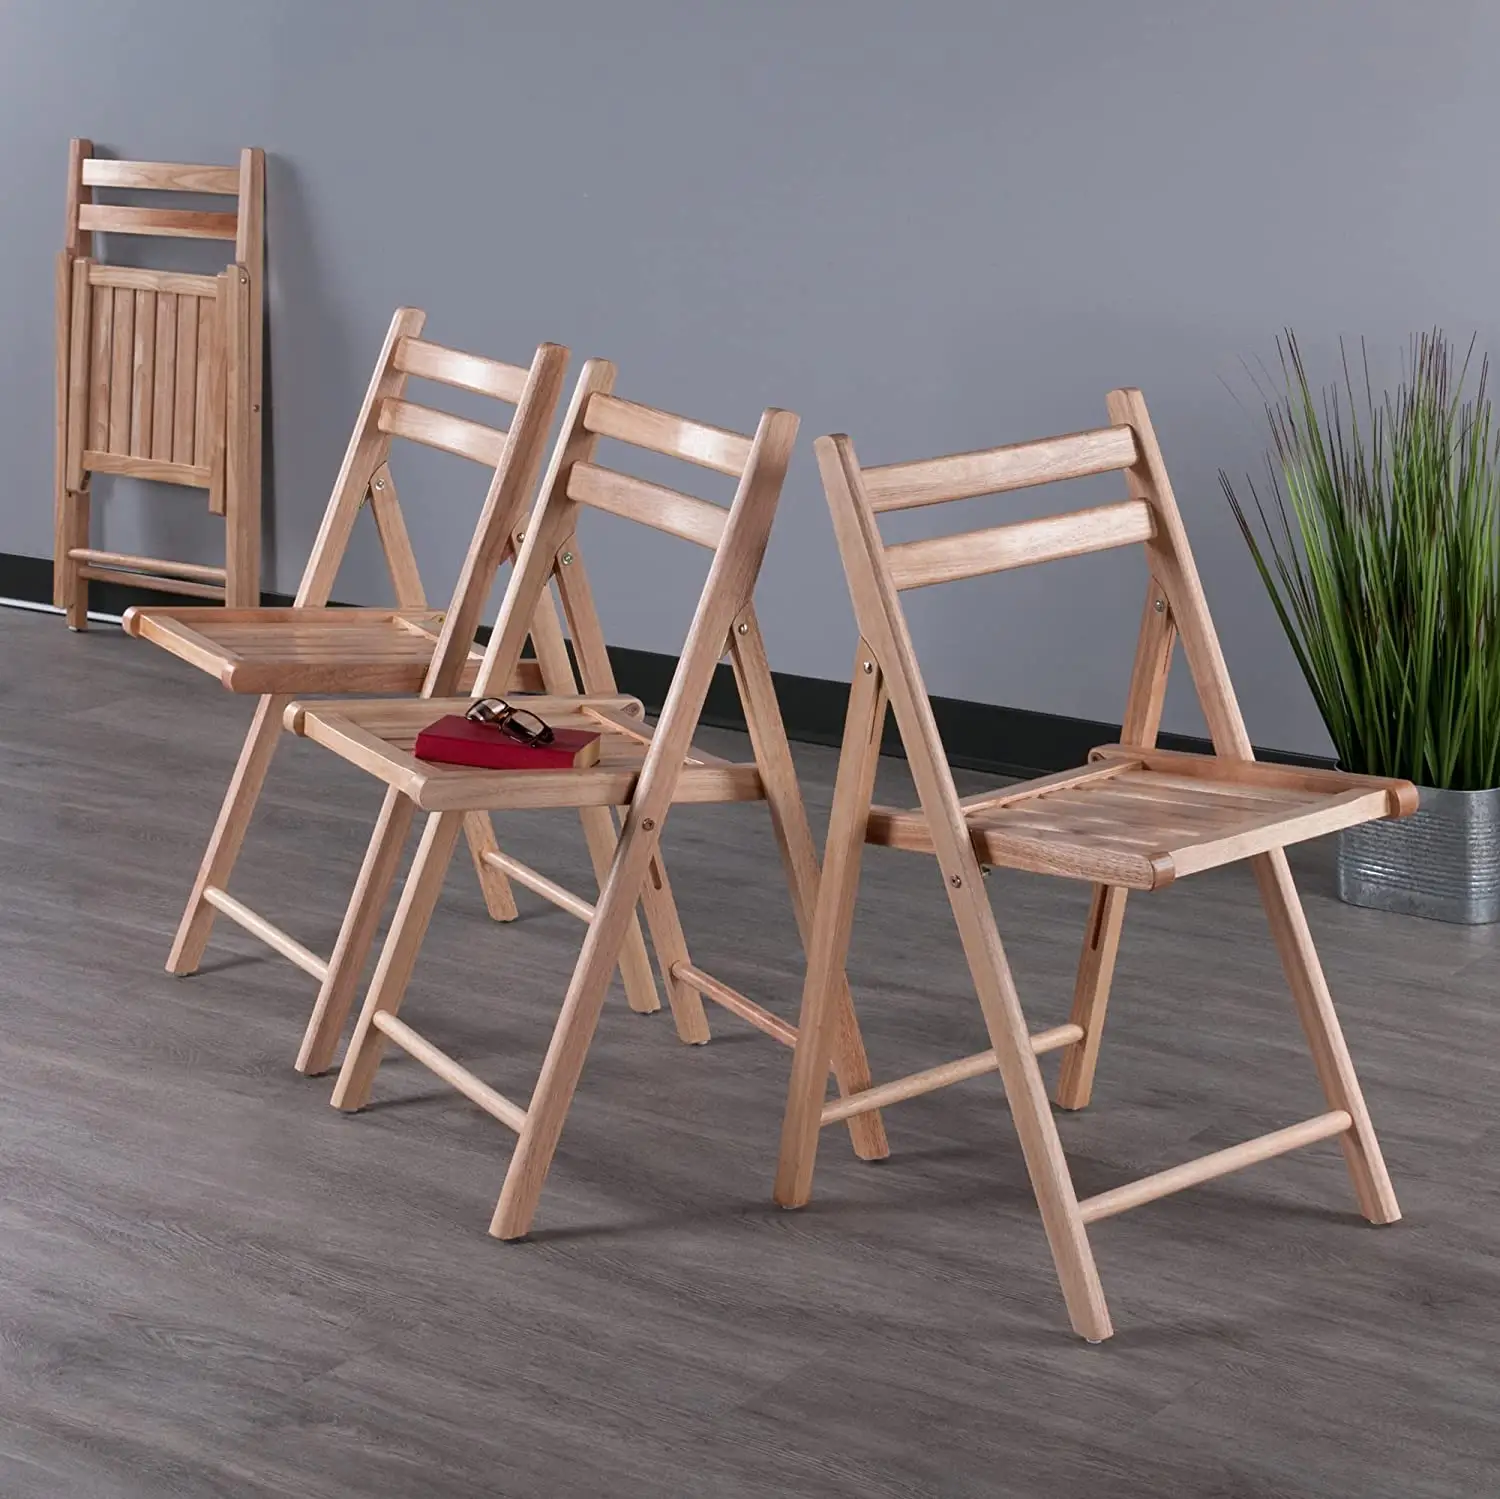 Klapp set Teak Stuhl, Holz hocker, Bambus faltbare 4 PC Hänge sessel für den Außenbereich